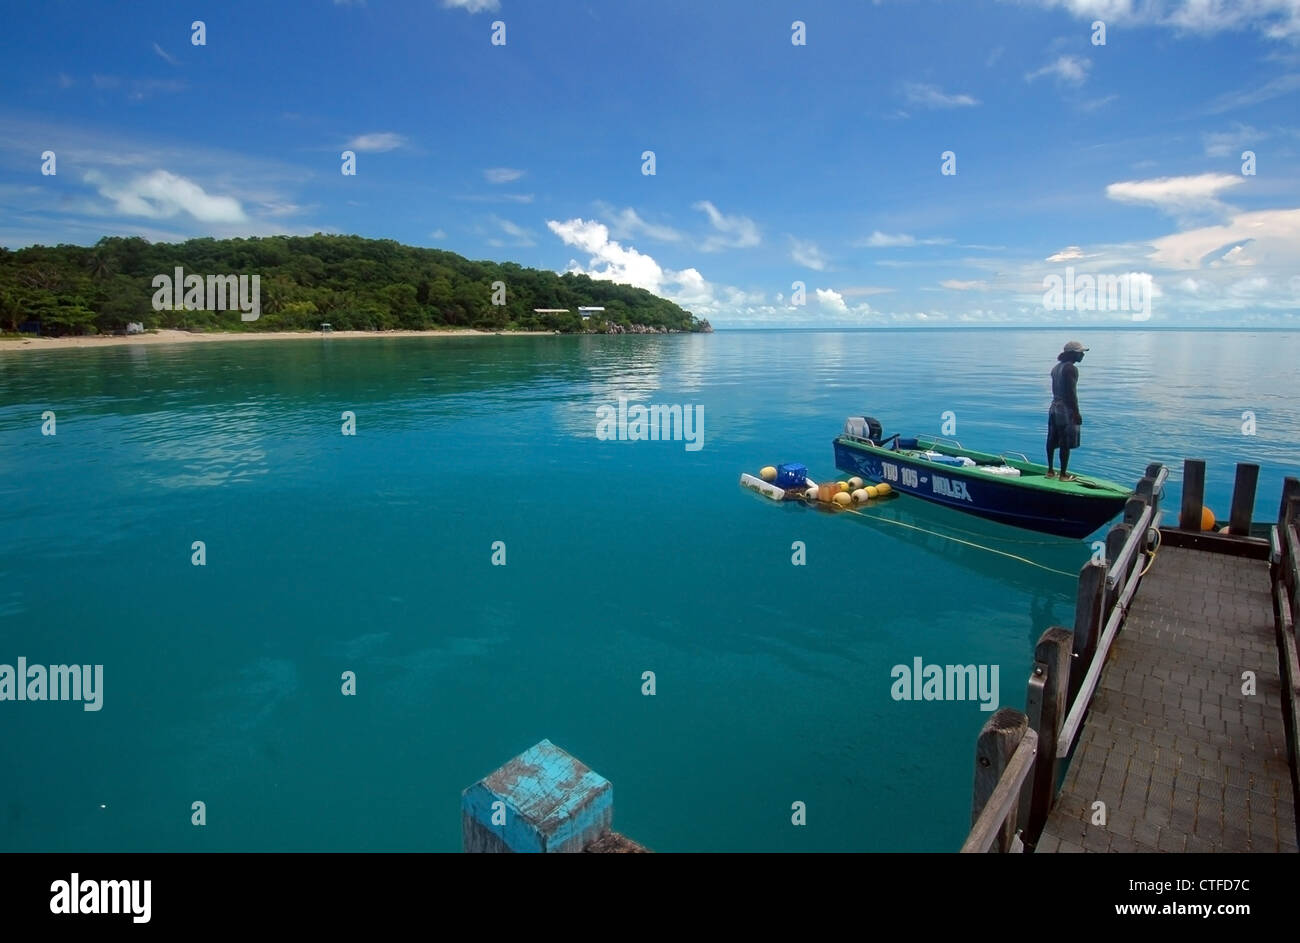 L'homme dans le bateau à la jetée, Iama Island (aka Yam Island), le centre de Torres Strait, Queensland, Australie. Pas de monsieur ou PR Banque D'Images